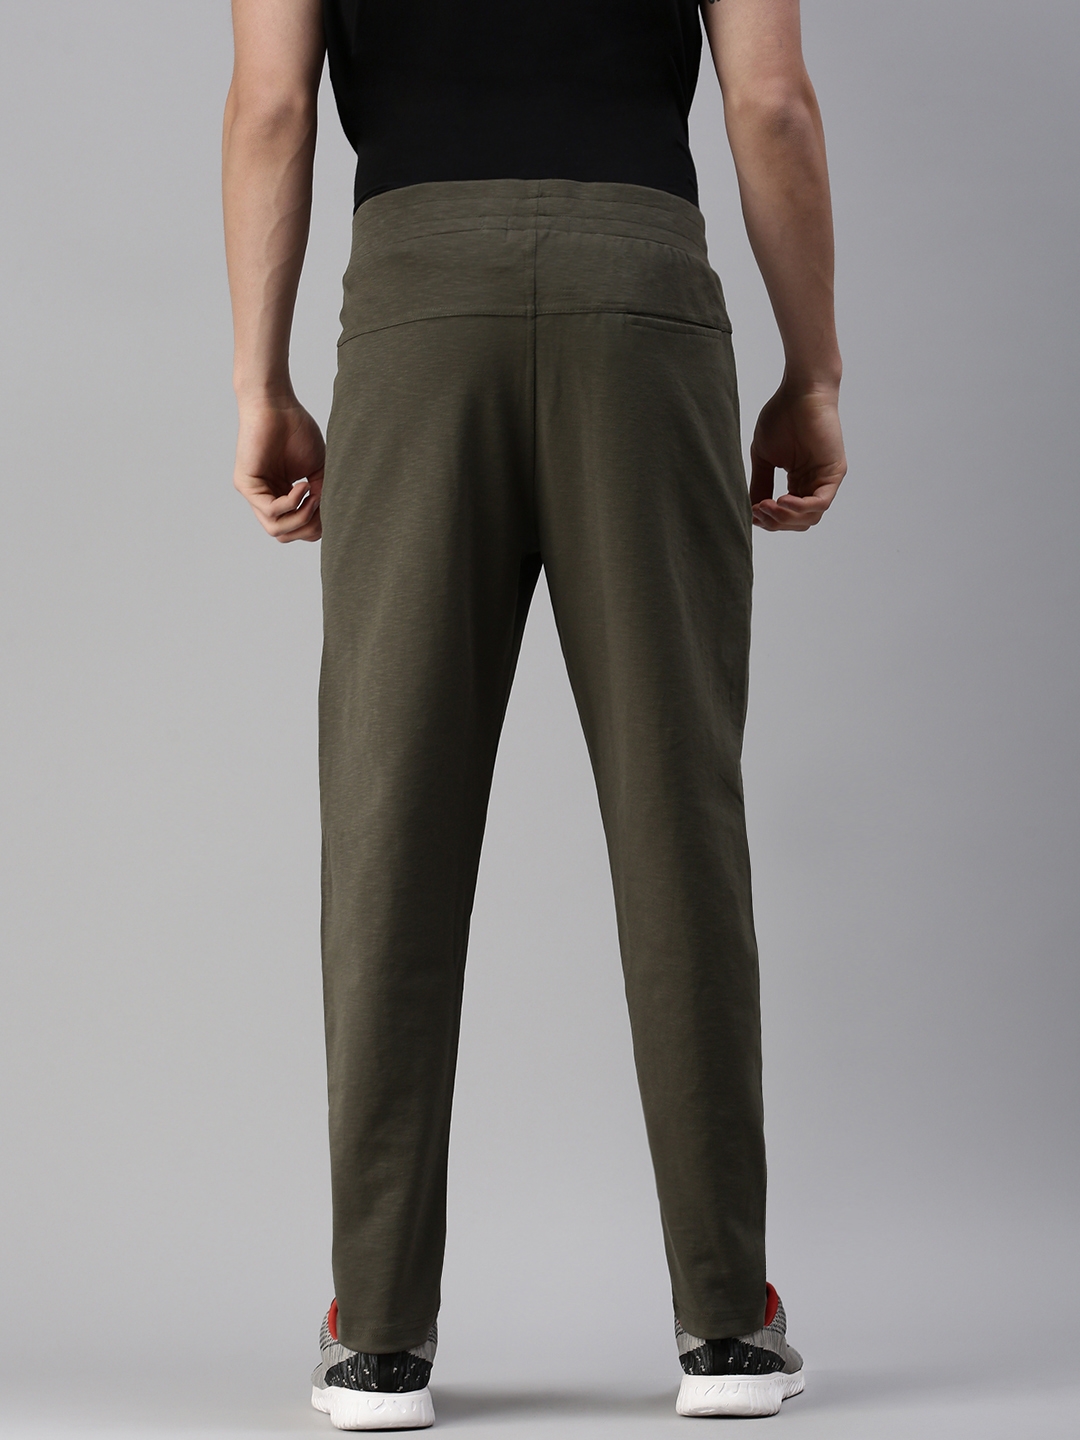 Showoff | SHOWOFF Men's Solid Cotton Olive Regular Fit Track Pant 2